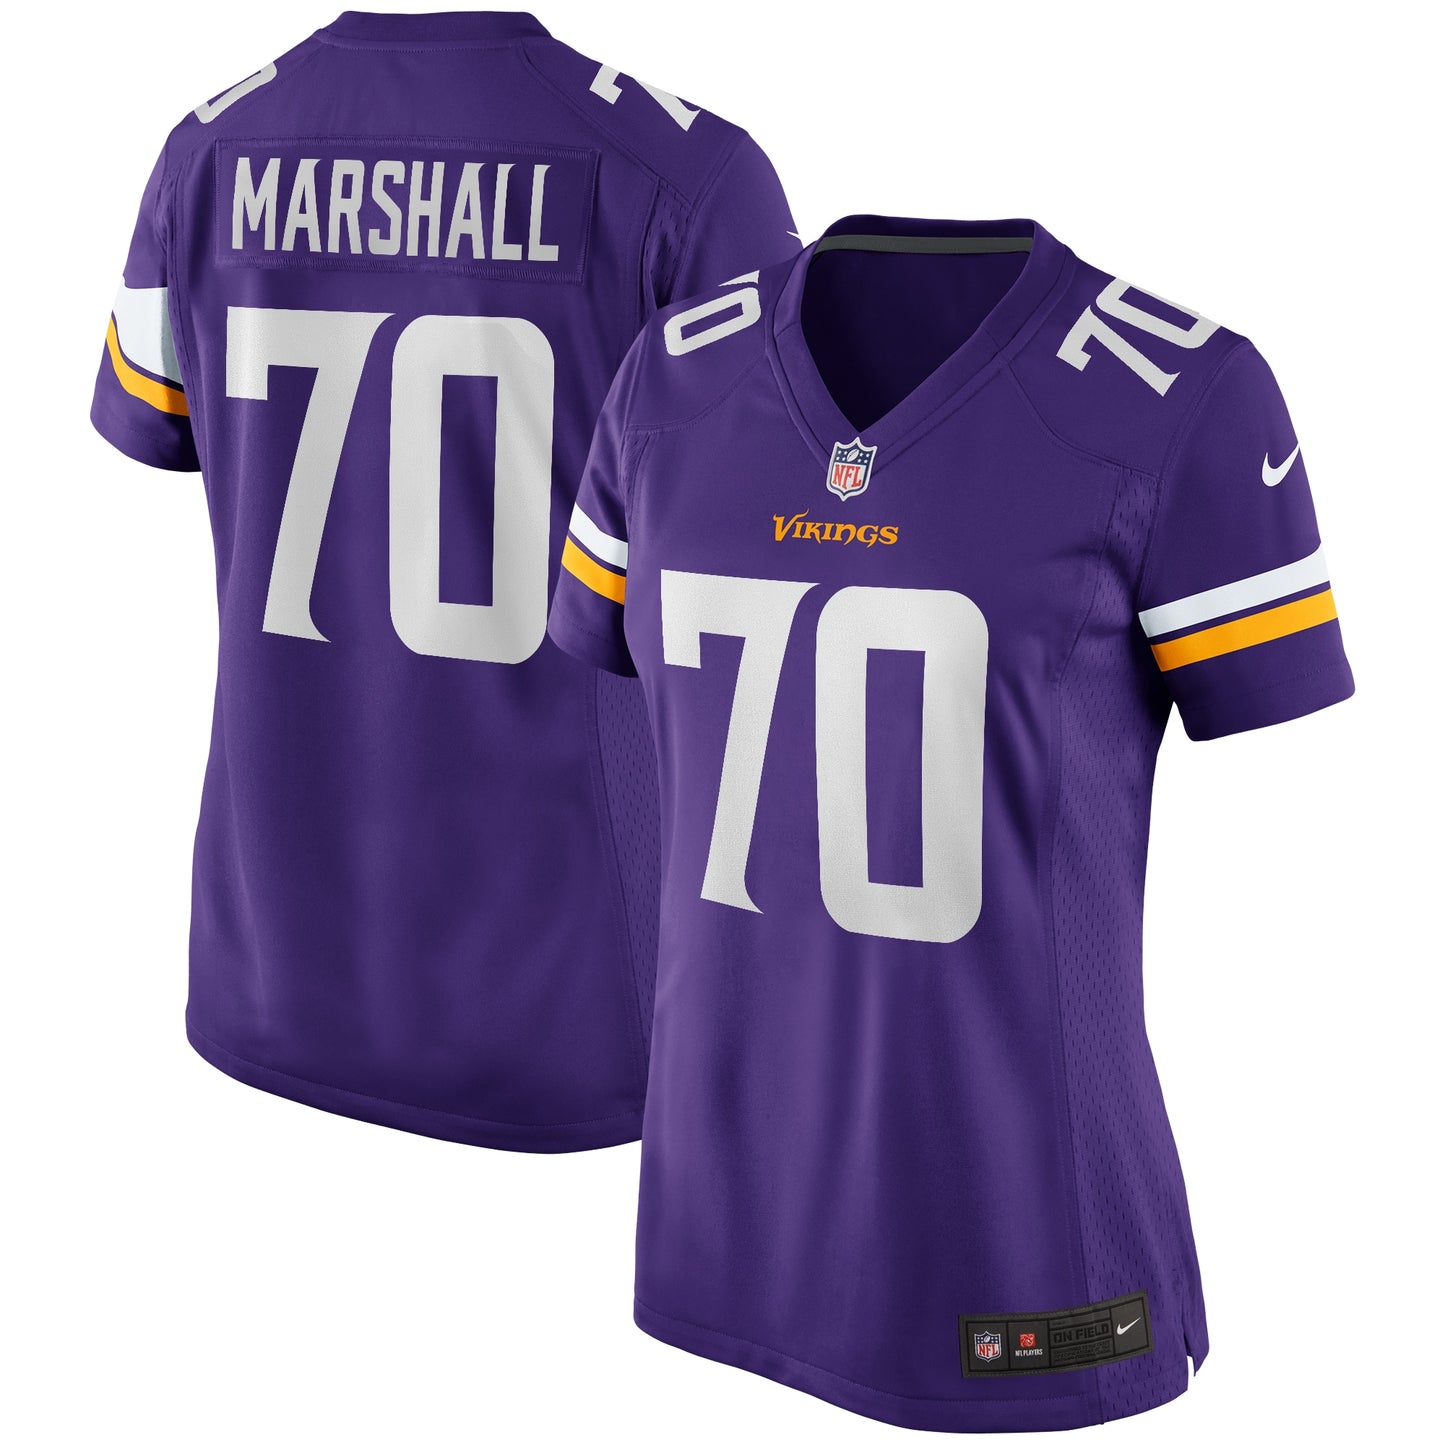 Jim Marshall Minnesota Vikings Nike Women's Game Retired Player Jersey - Purple